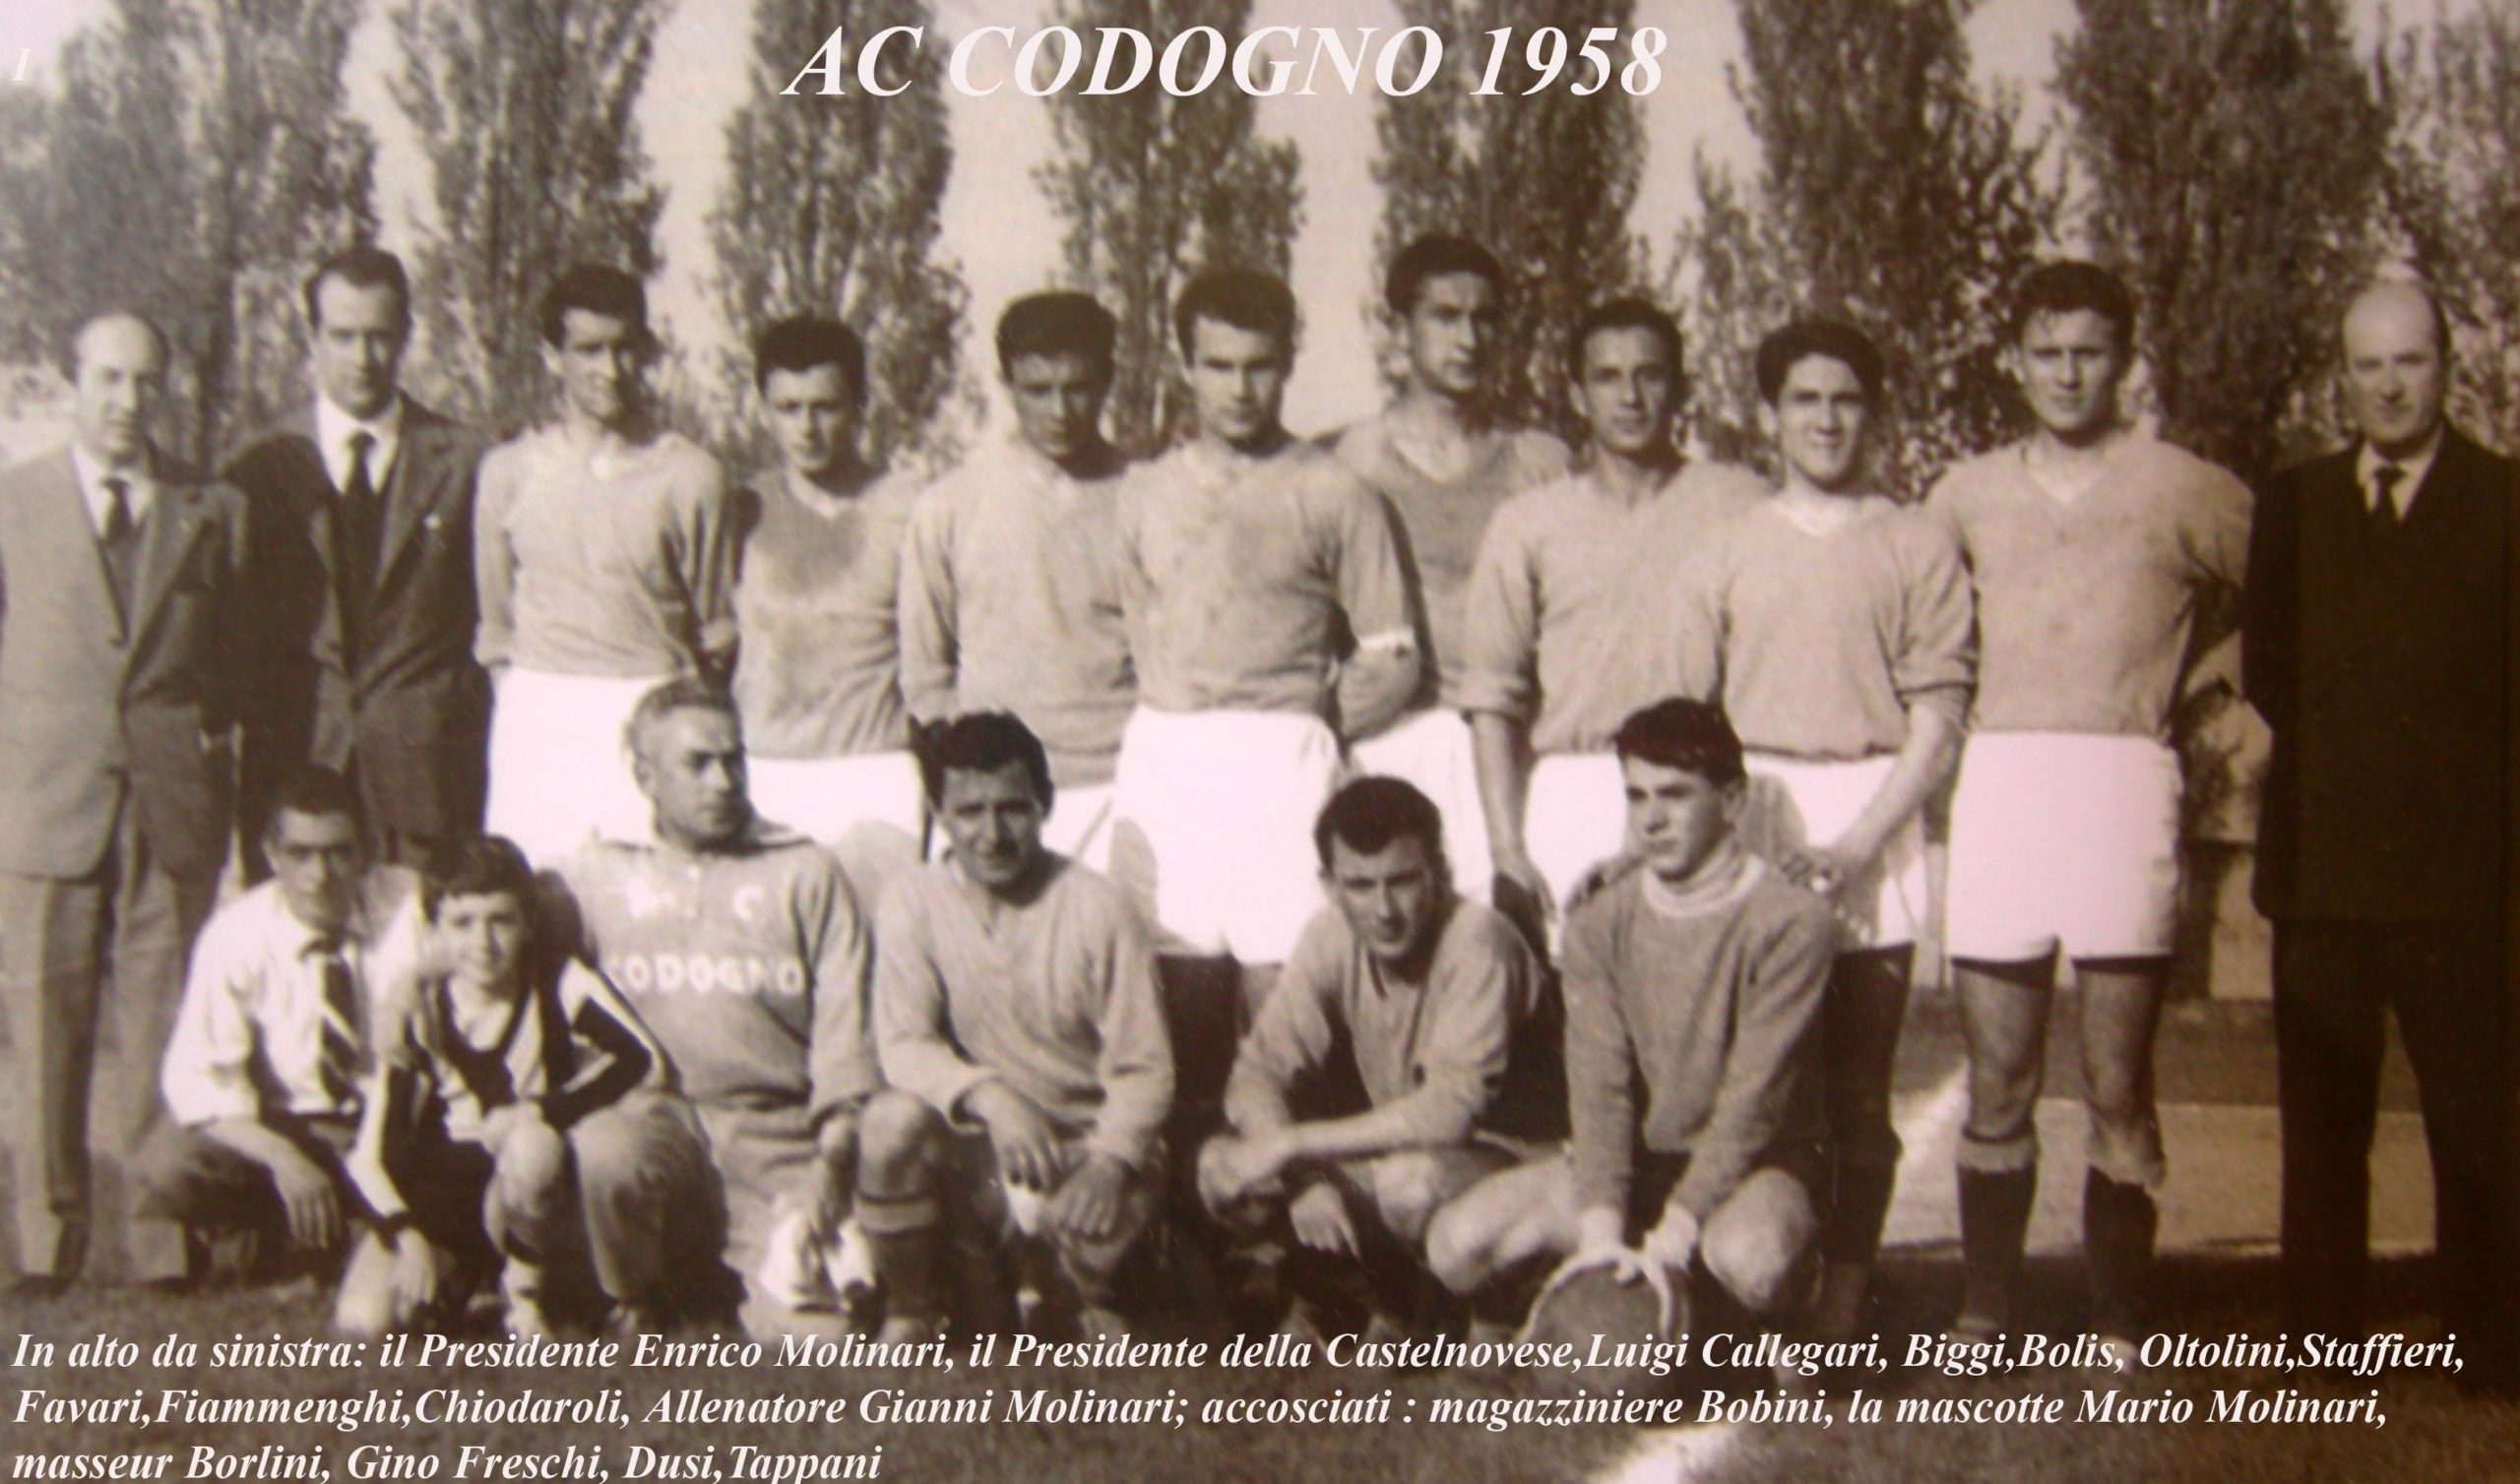 Per Ale Scarponi    AC Codogno 1958 (la mascotte con la maglia del Cesena ero io!!)